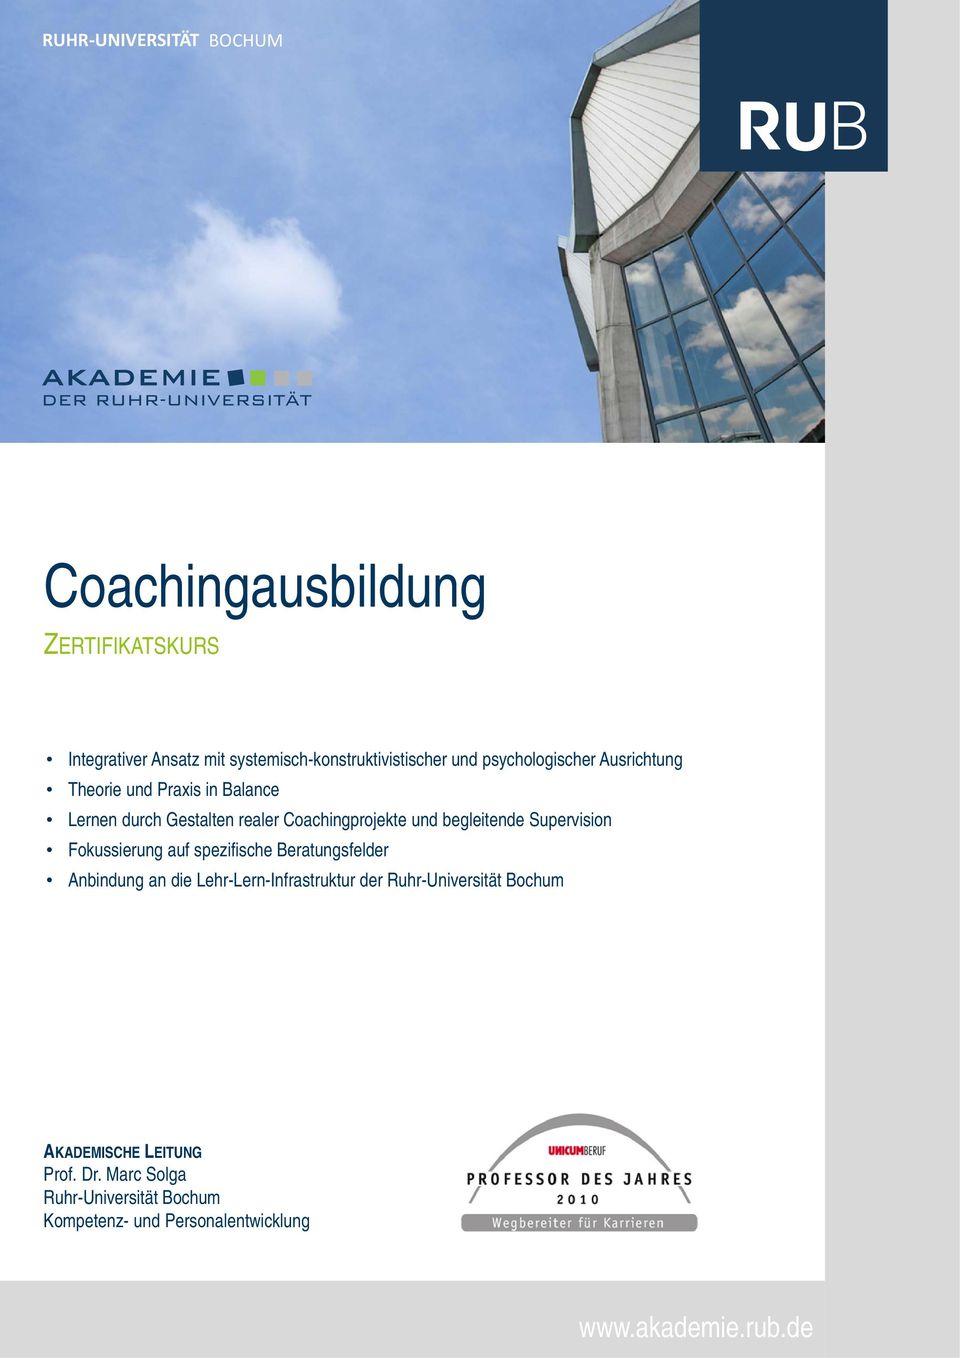 Supervision Fokussierung auf spezifische Beratungsfelder Anbindung an die Lehr-Lern-Infrastruktur der Ruhr-Universität